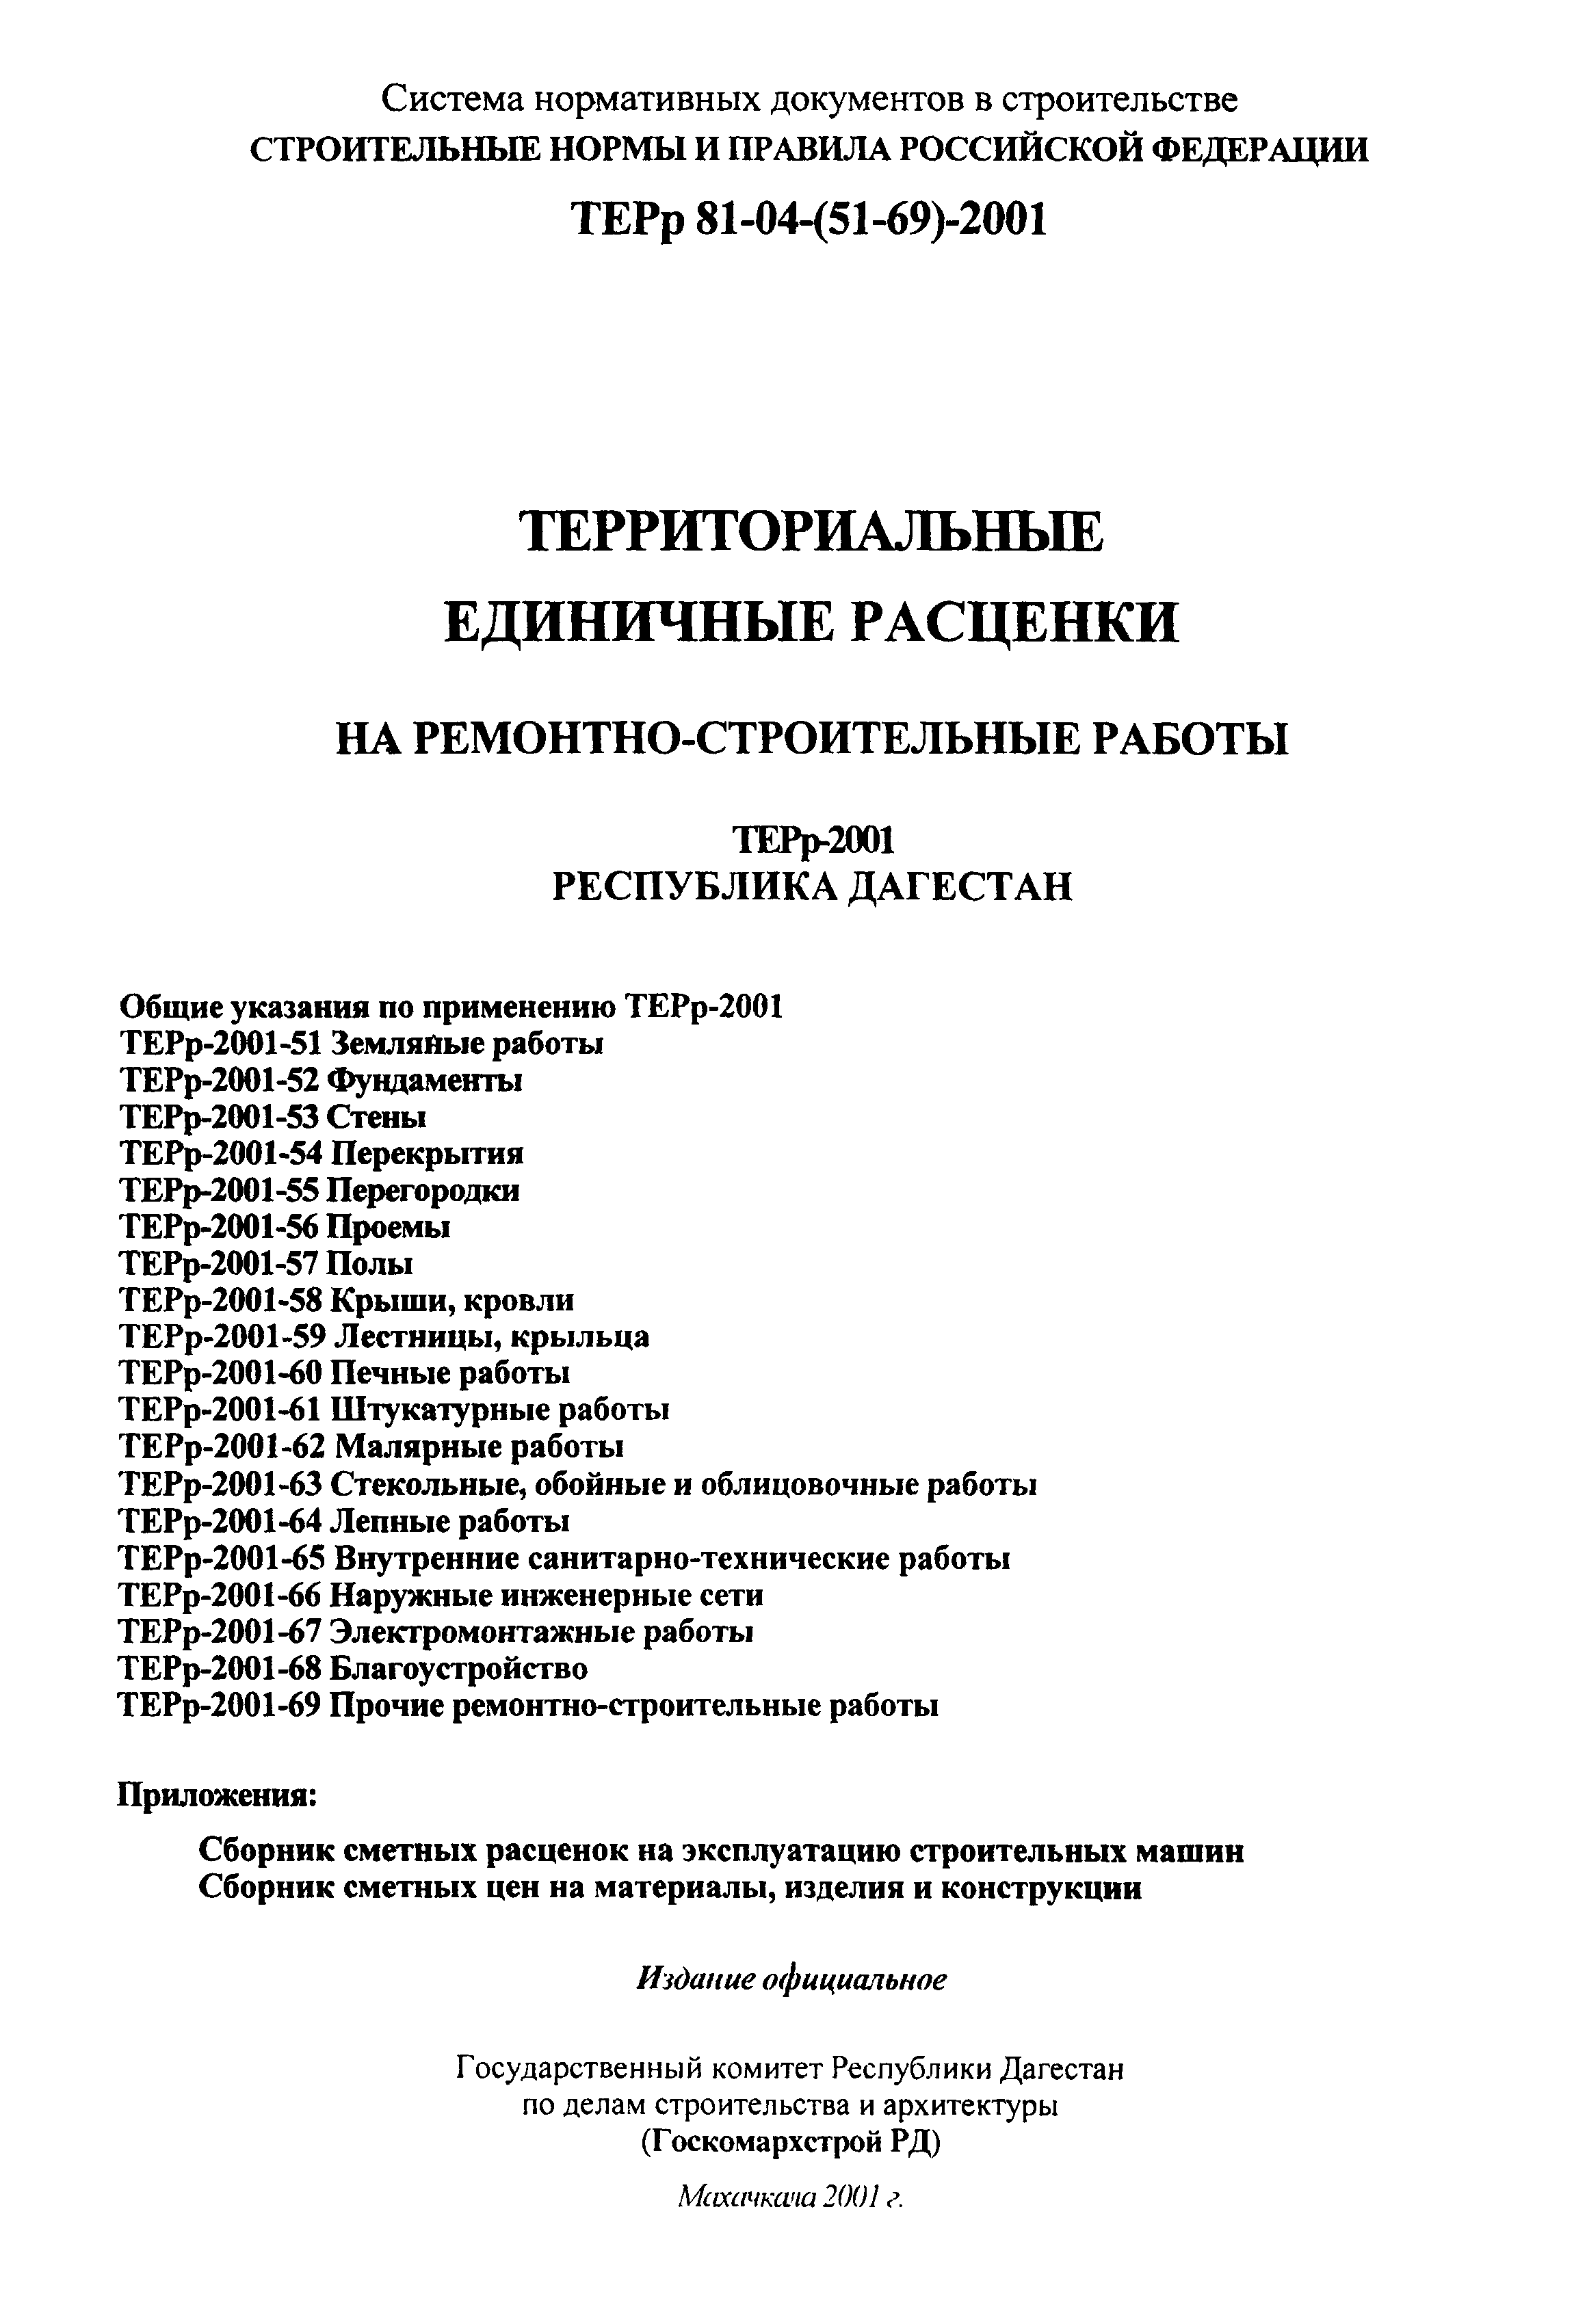 ТЕРр Республика Дагестан 2001-66